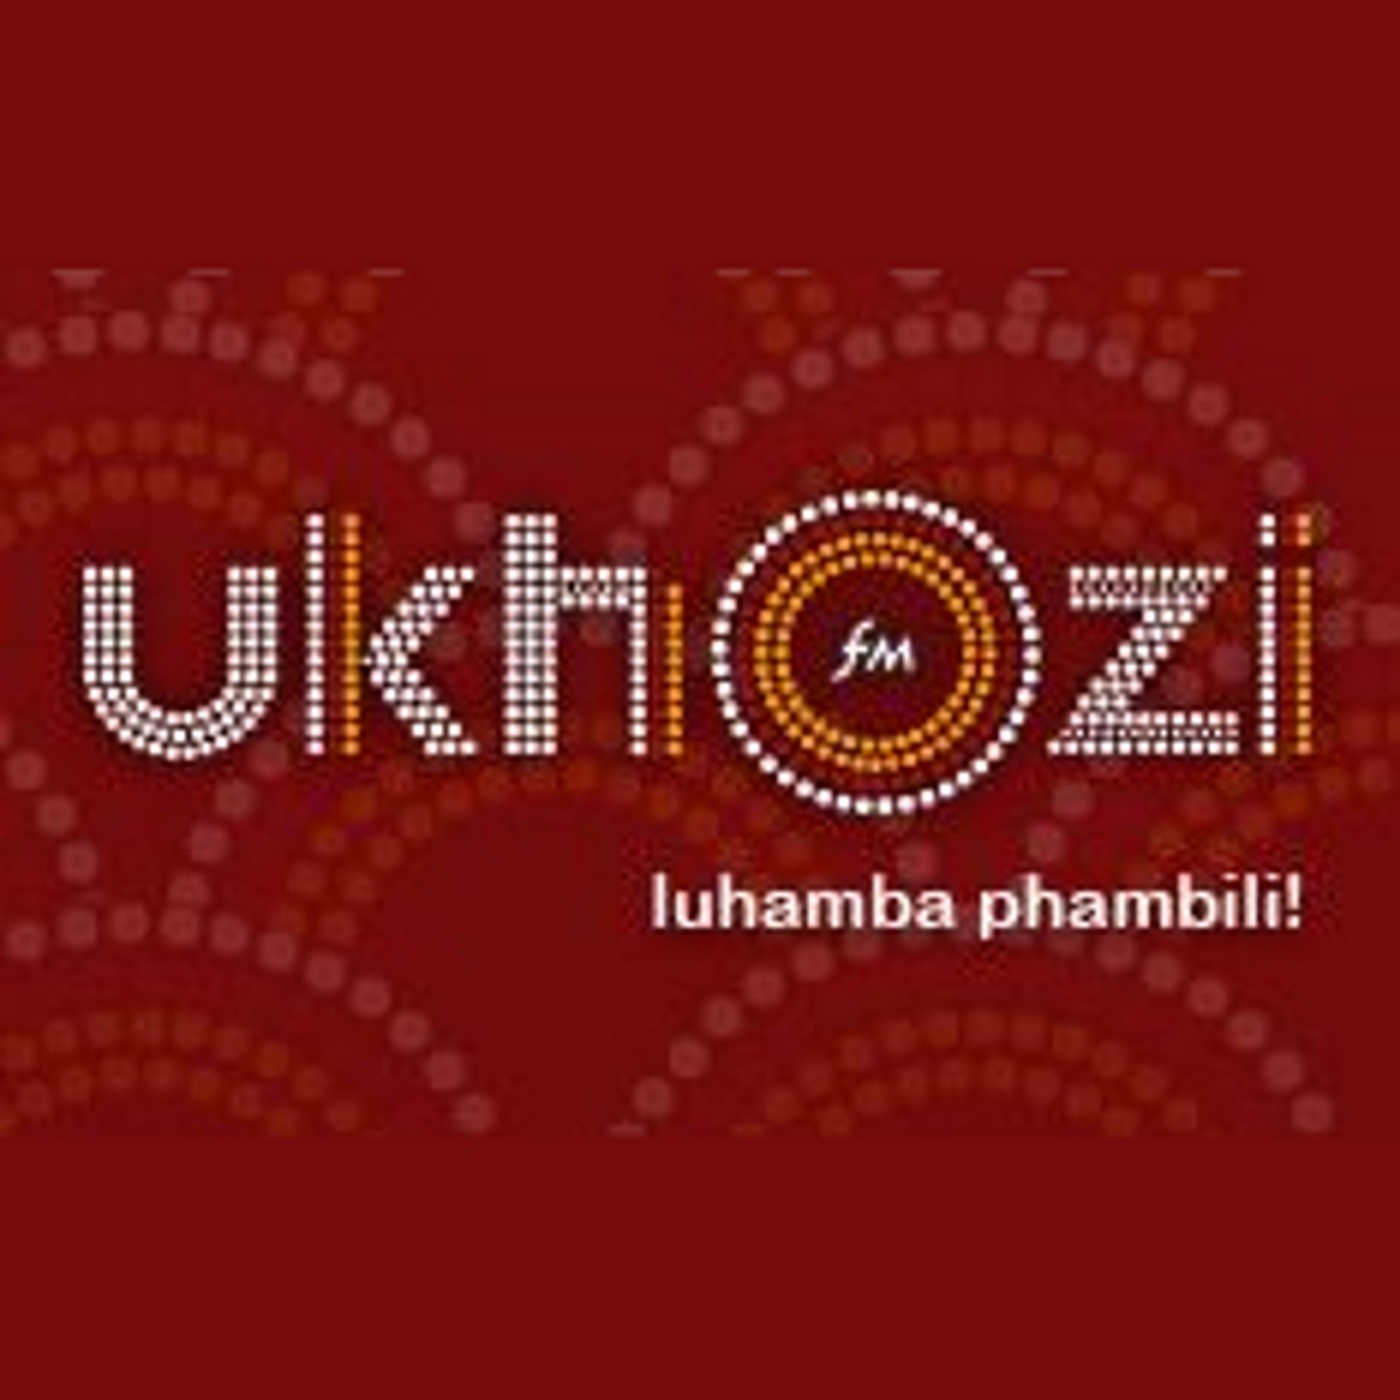 Hlaziya ipolitiki no Nhlanhla Mtaka_Izimali ezibe umnikelo kumkhankaso ka CR17 wokhetho